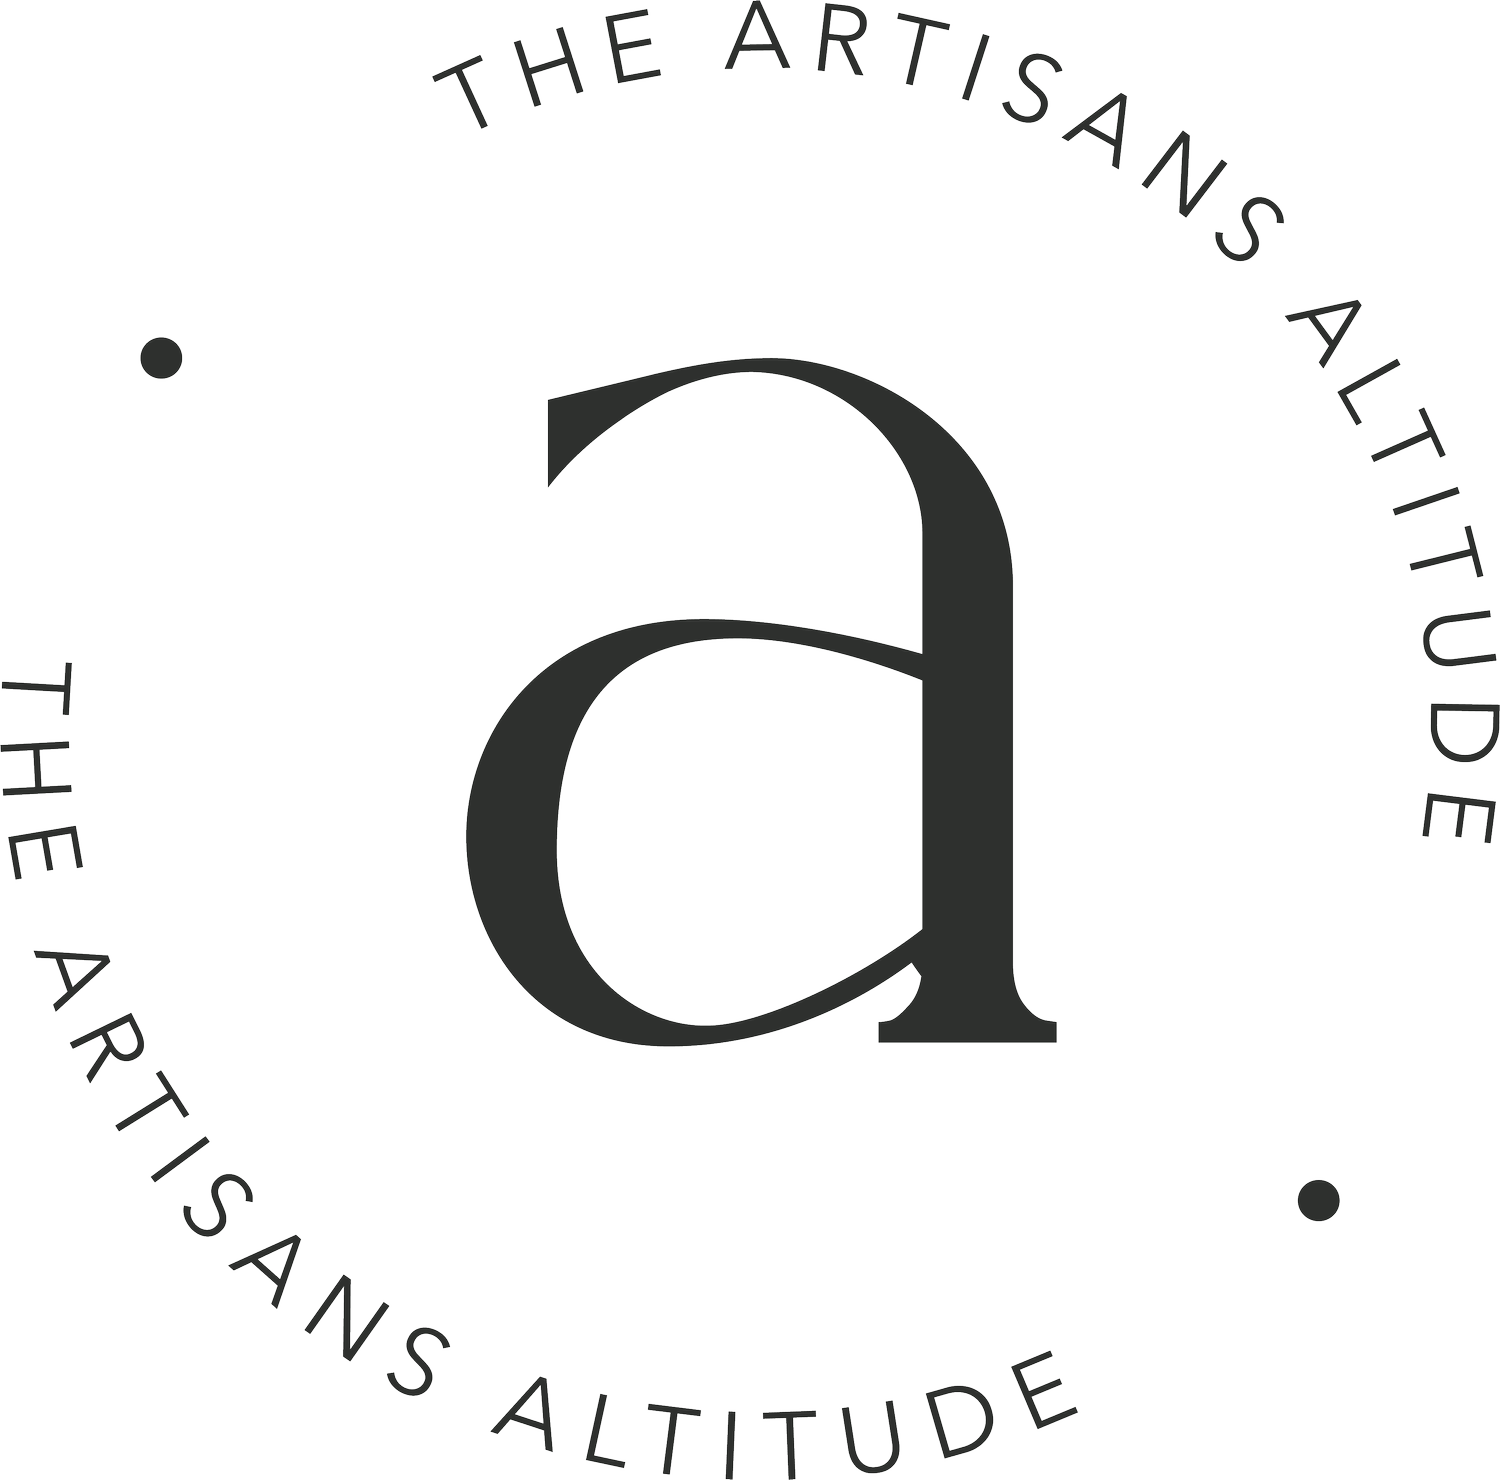 The Artisans Altitude